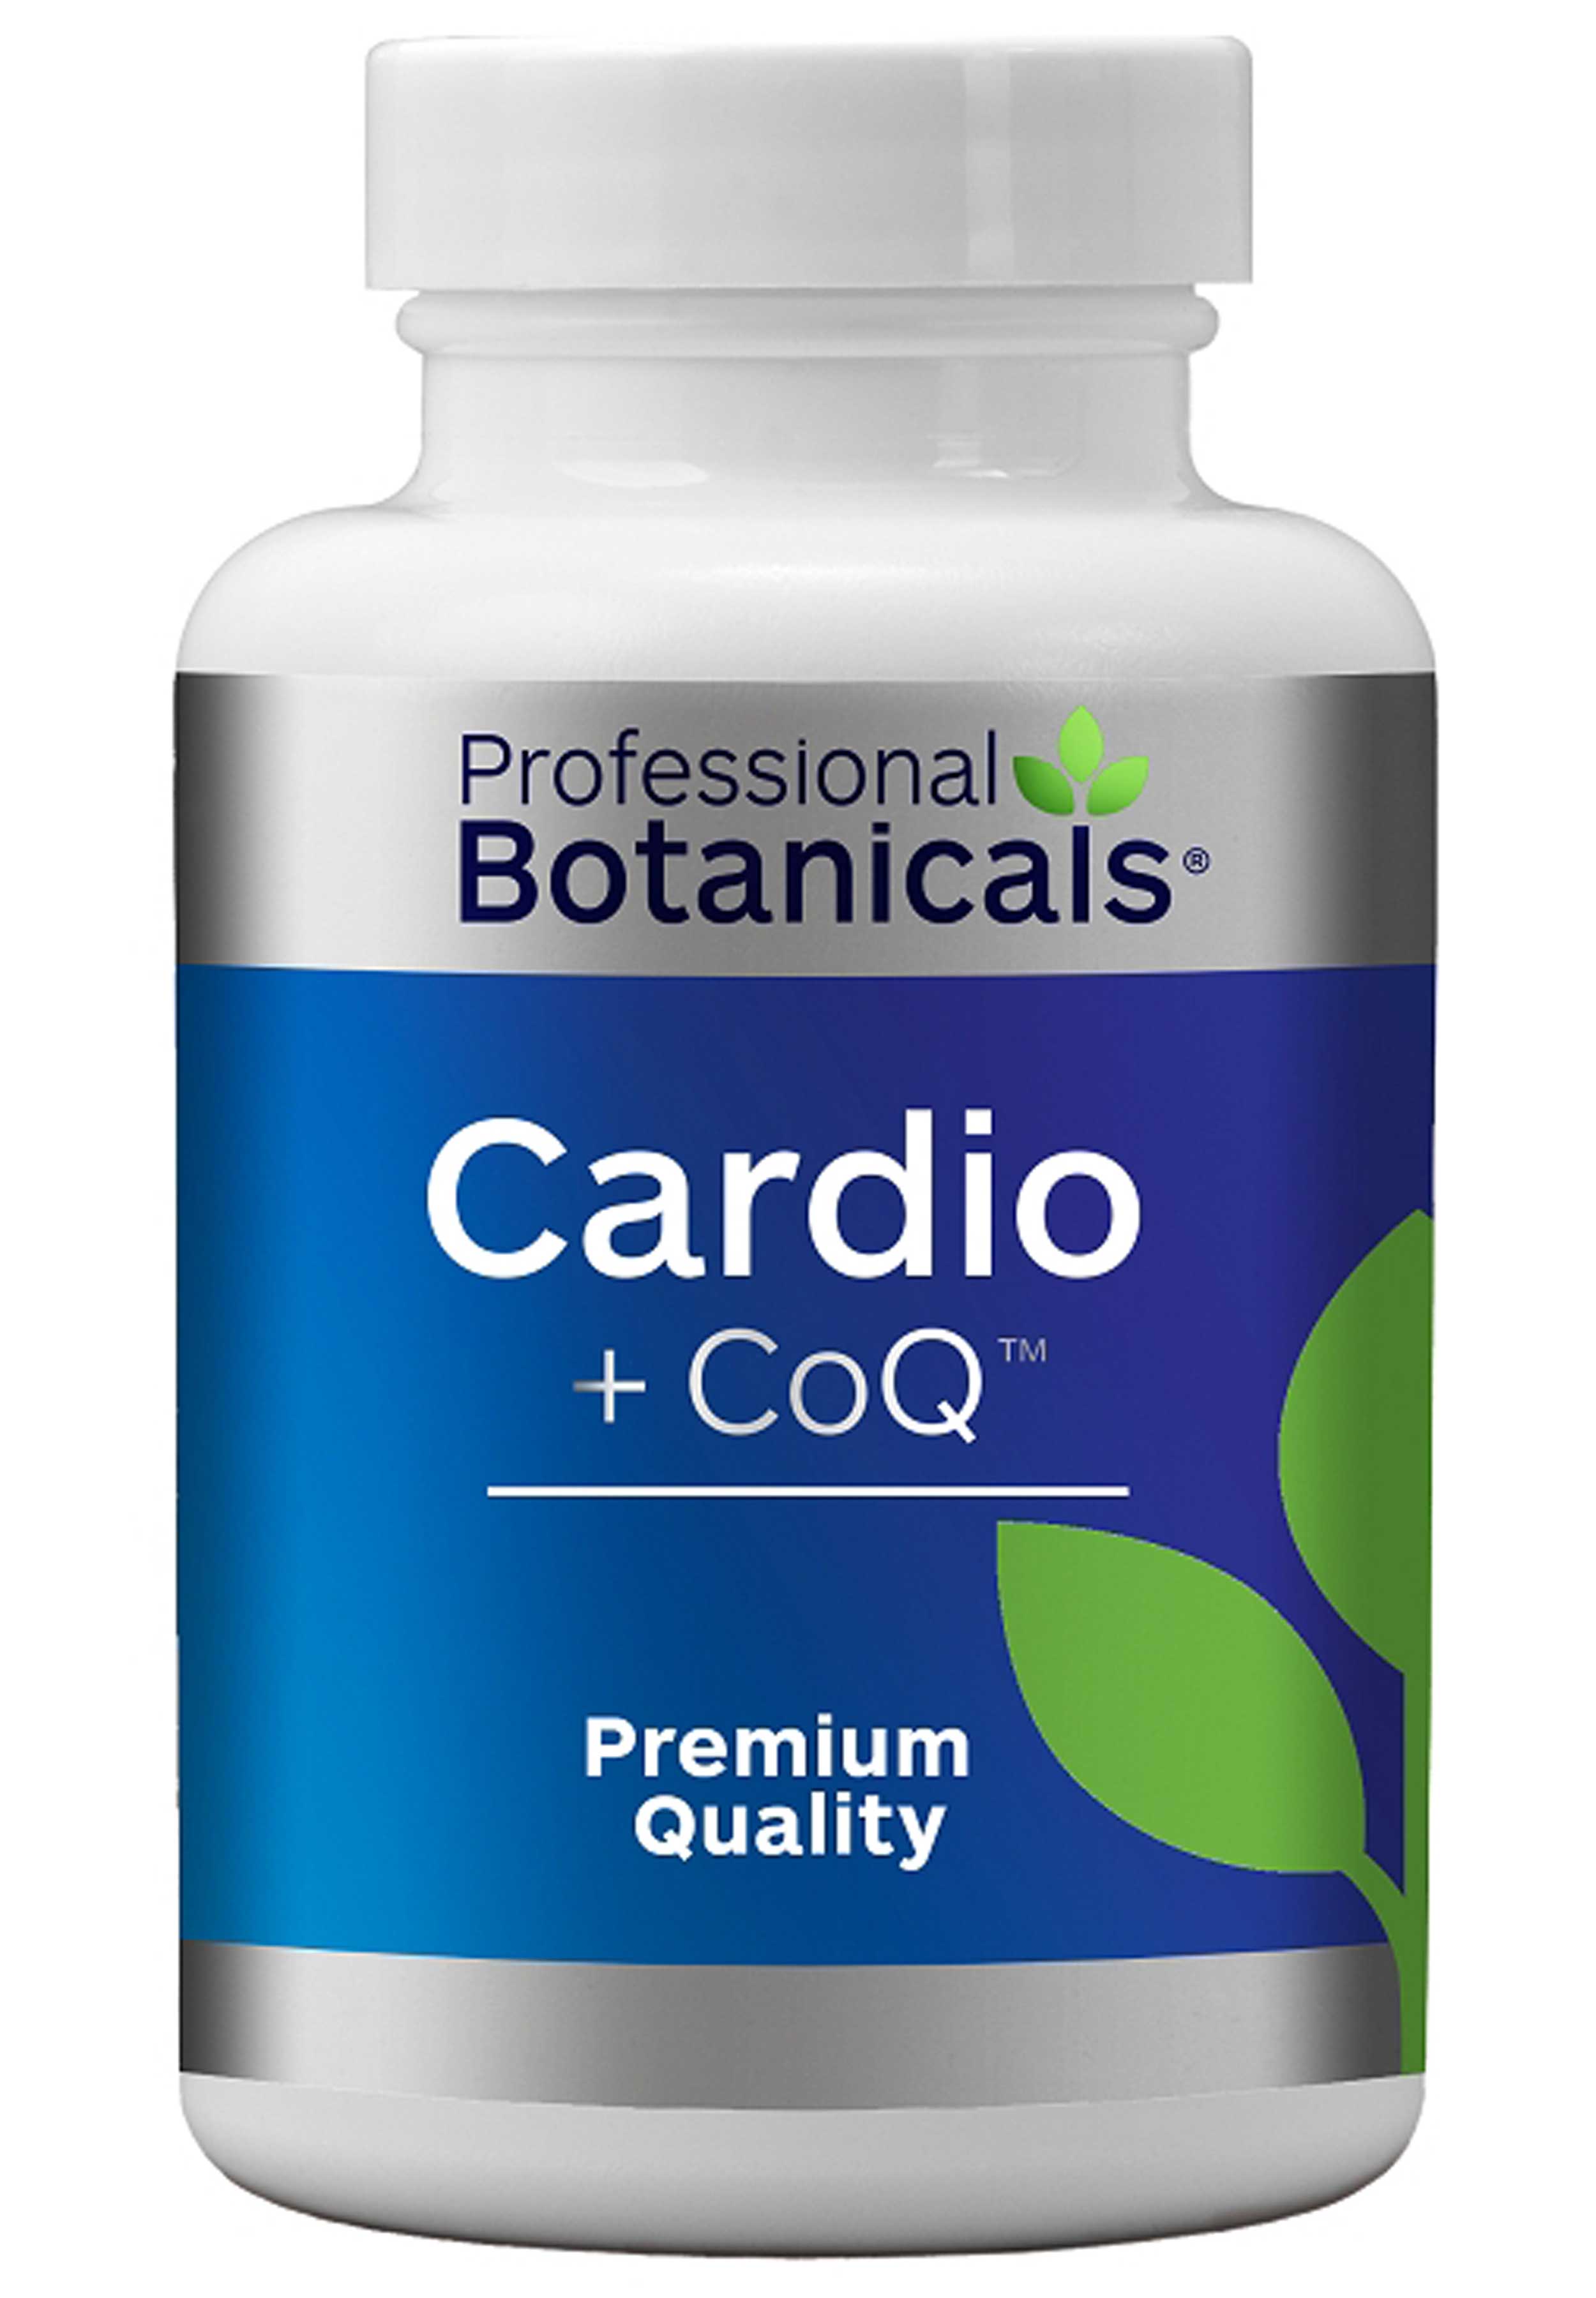 Professional Botanicals Cardio + CoQ